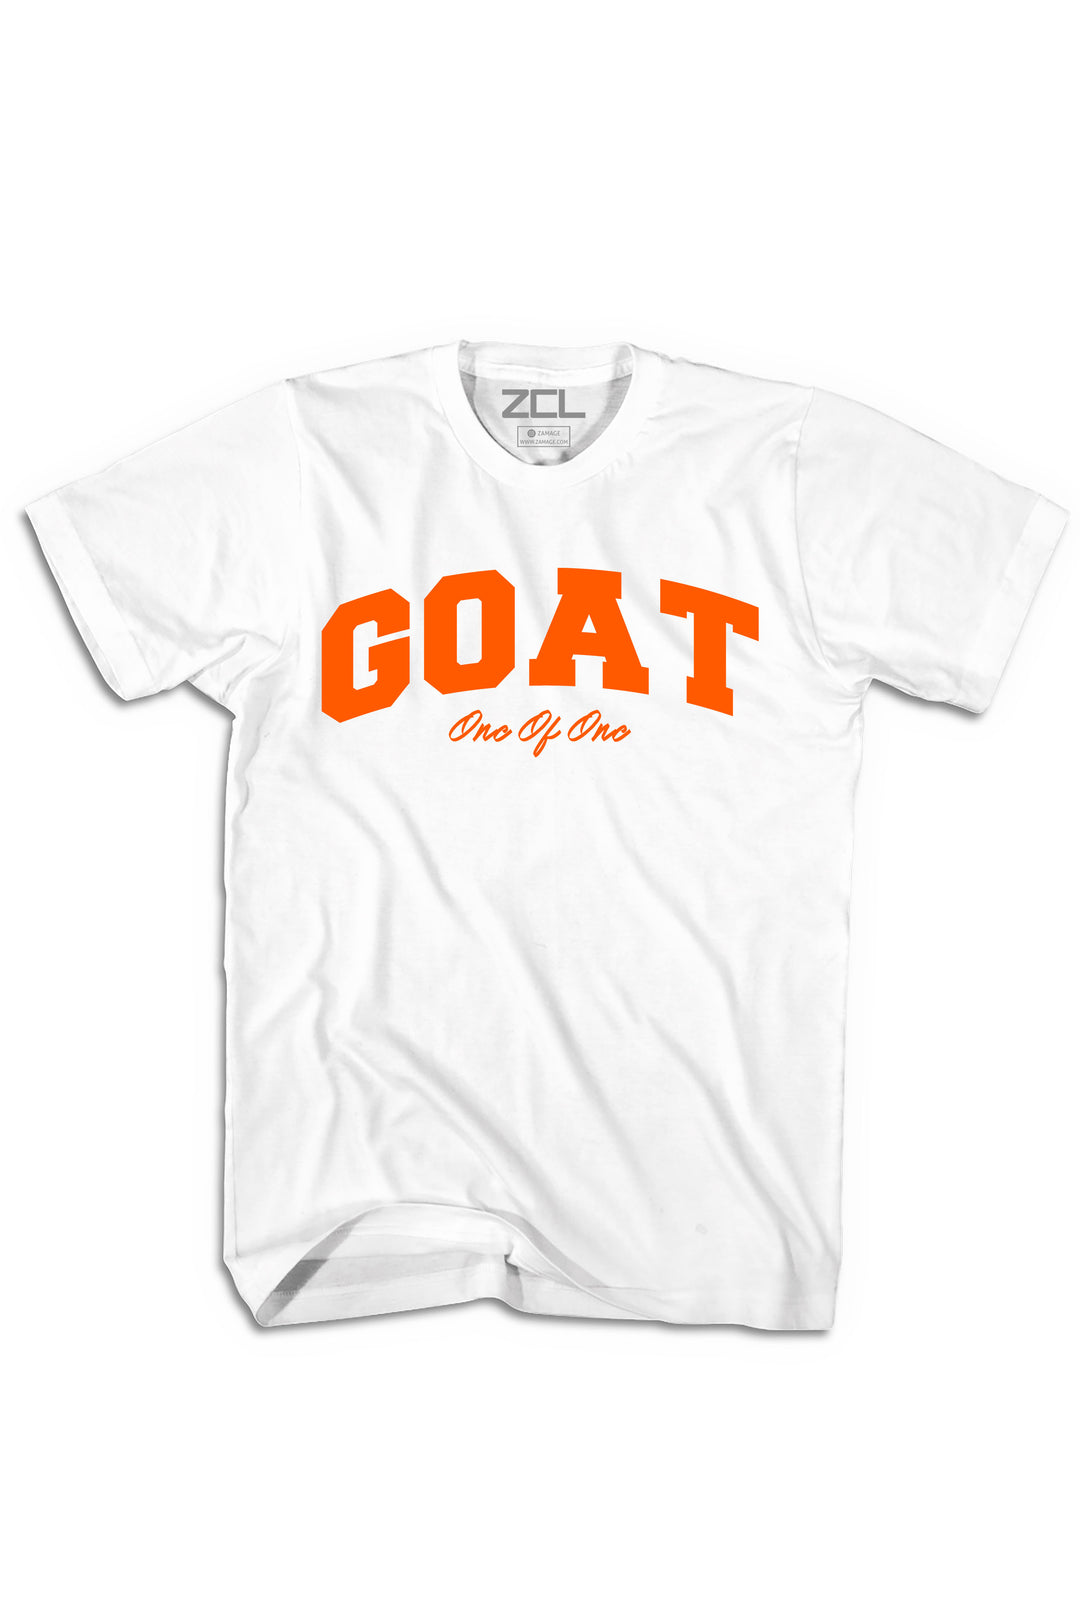 Goat Tee (Orange Logo) - Zamage